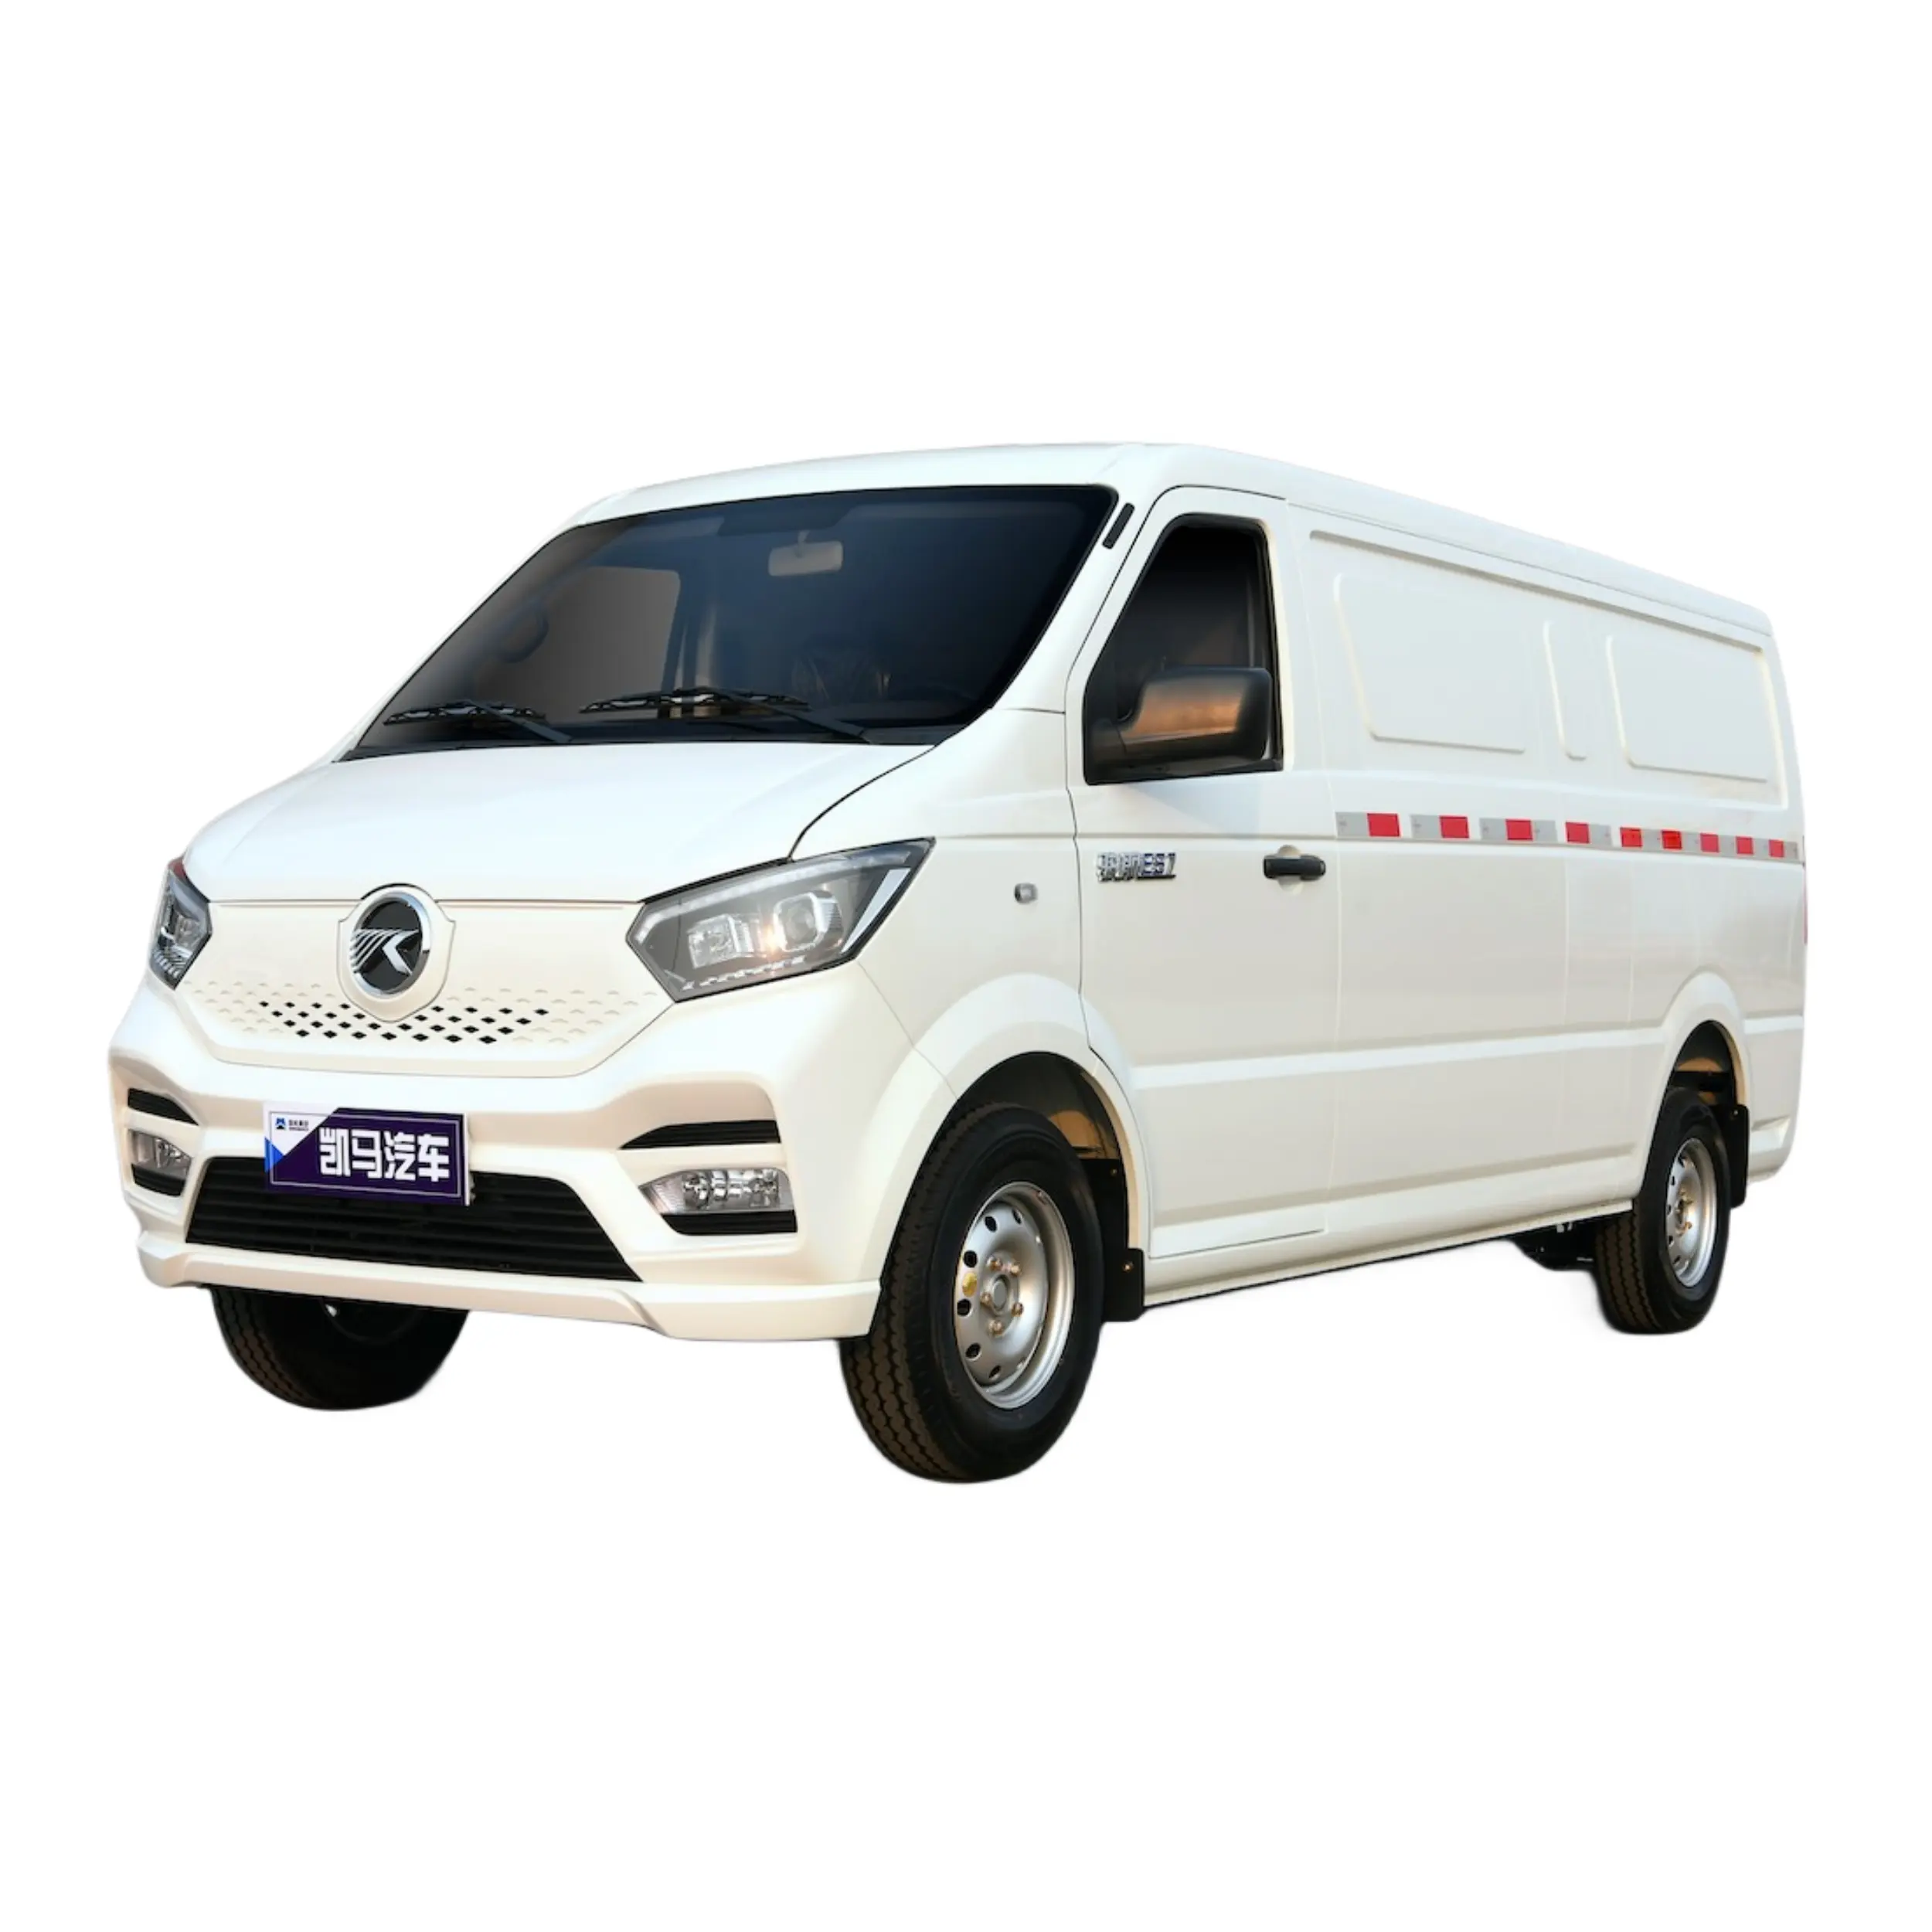 Ev truk Pickup elektrik Mini Van listrik kecepatan tinggi untuk kargo dibuat di Cina untuk dijual